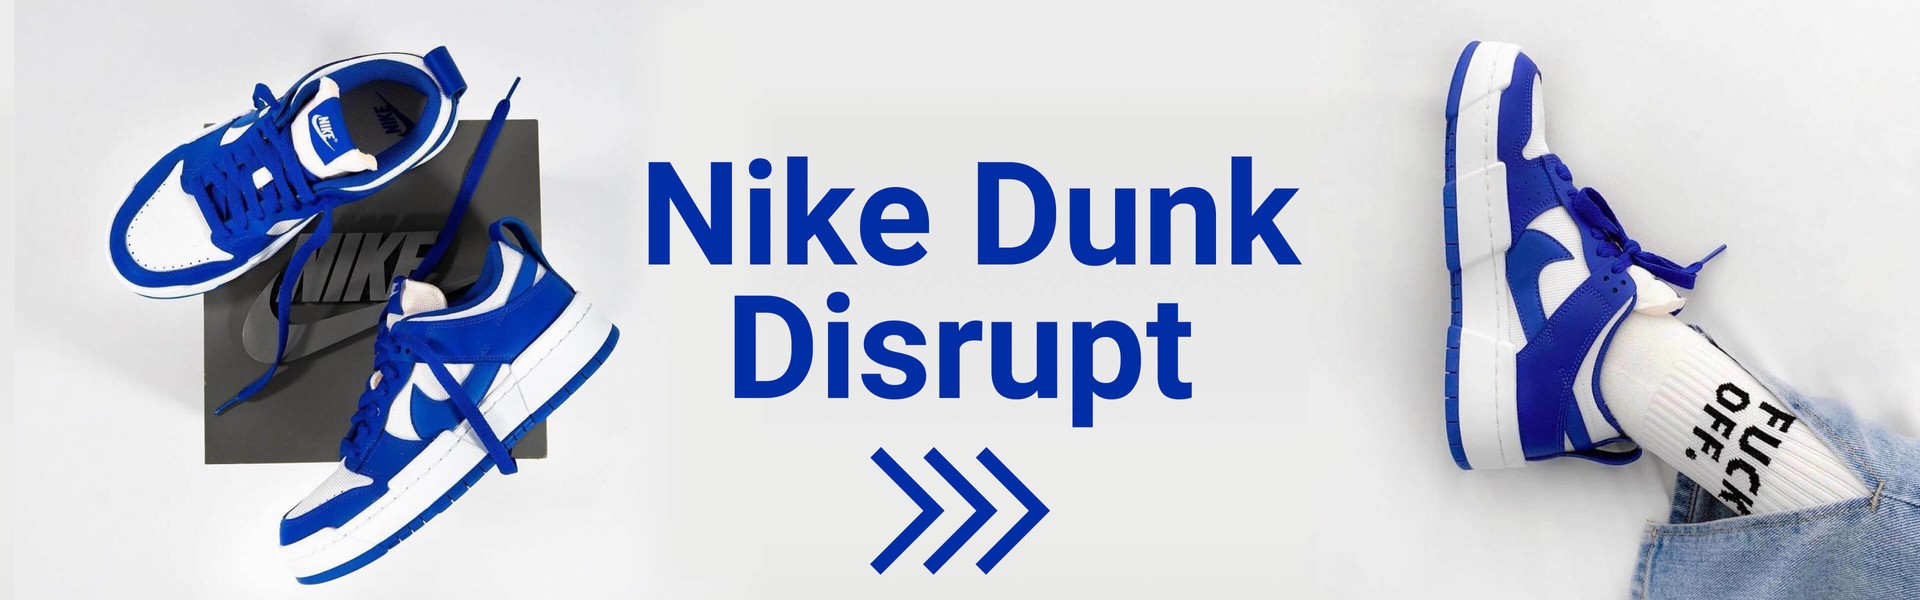 Женские кроссовки Nike Dunk Disrupt